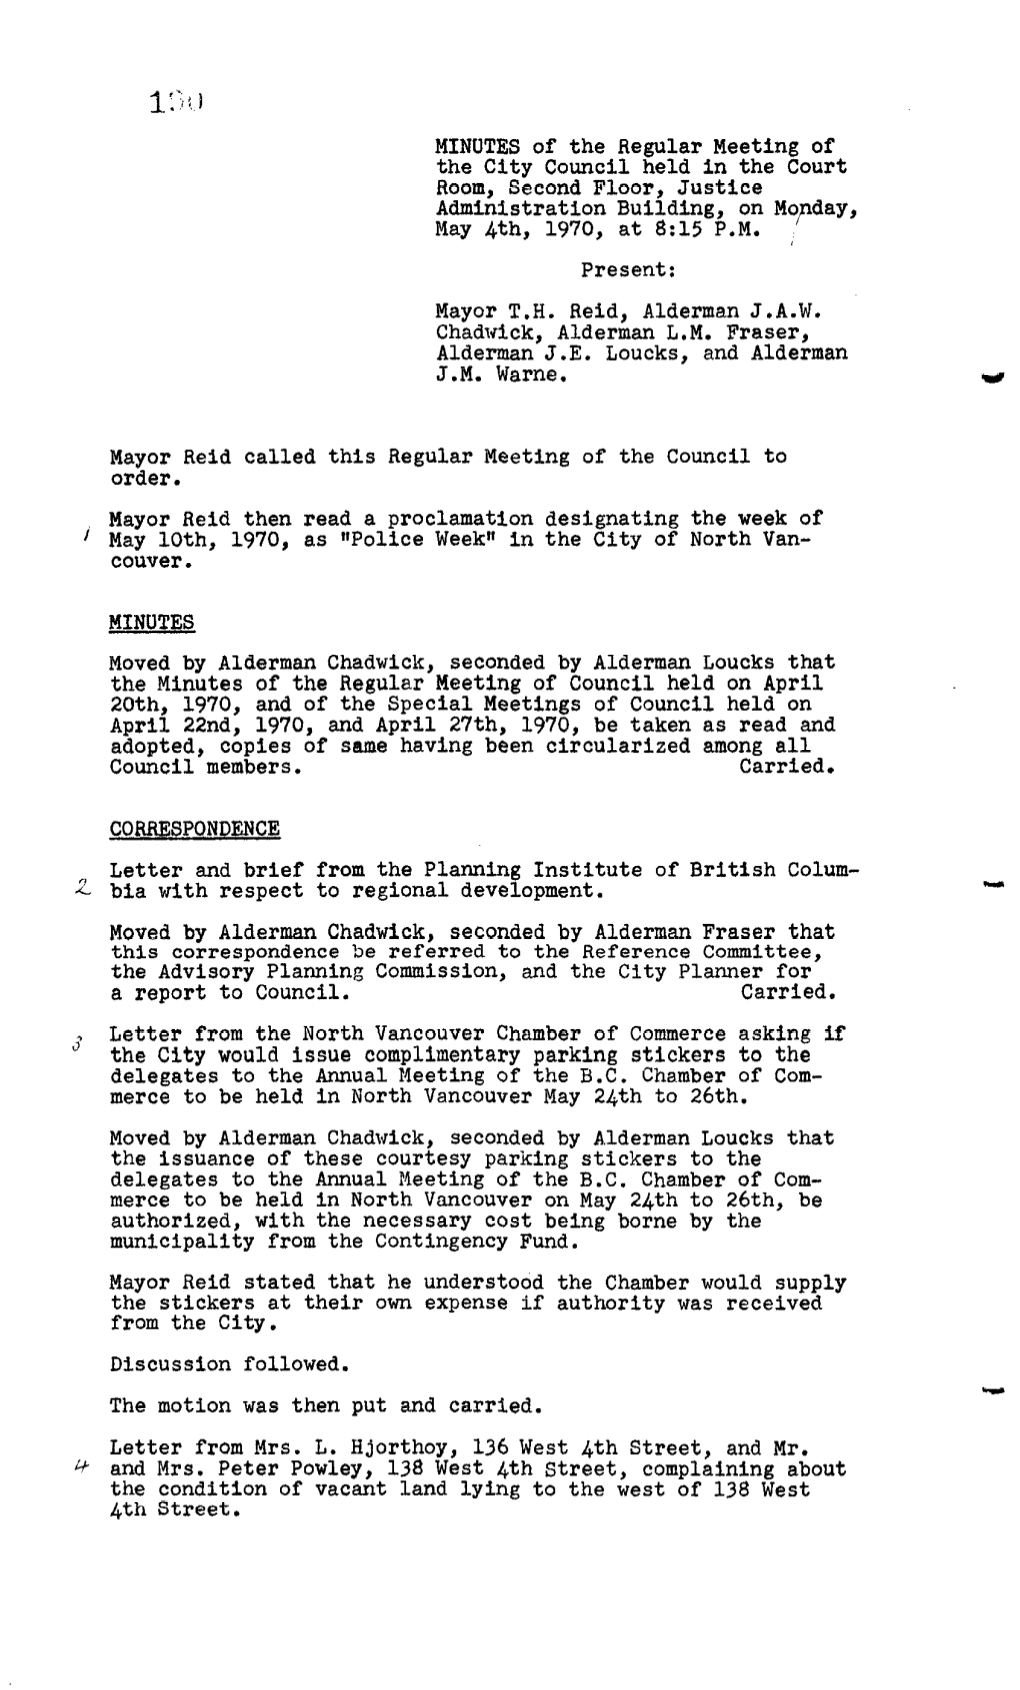 19, 1970 Council Minutes